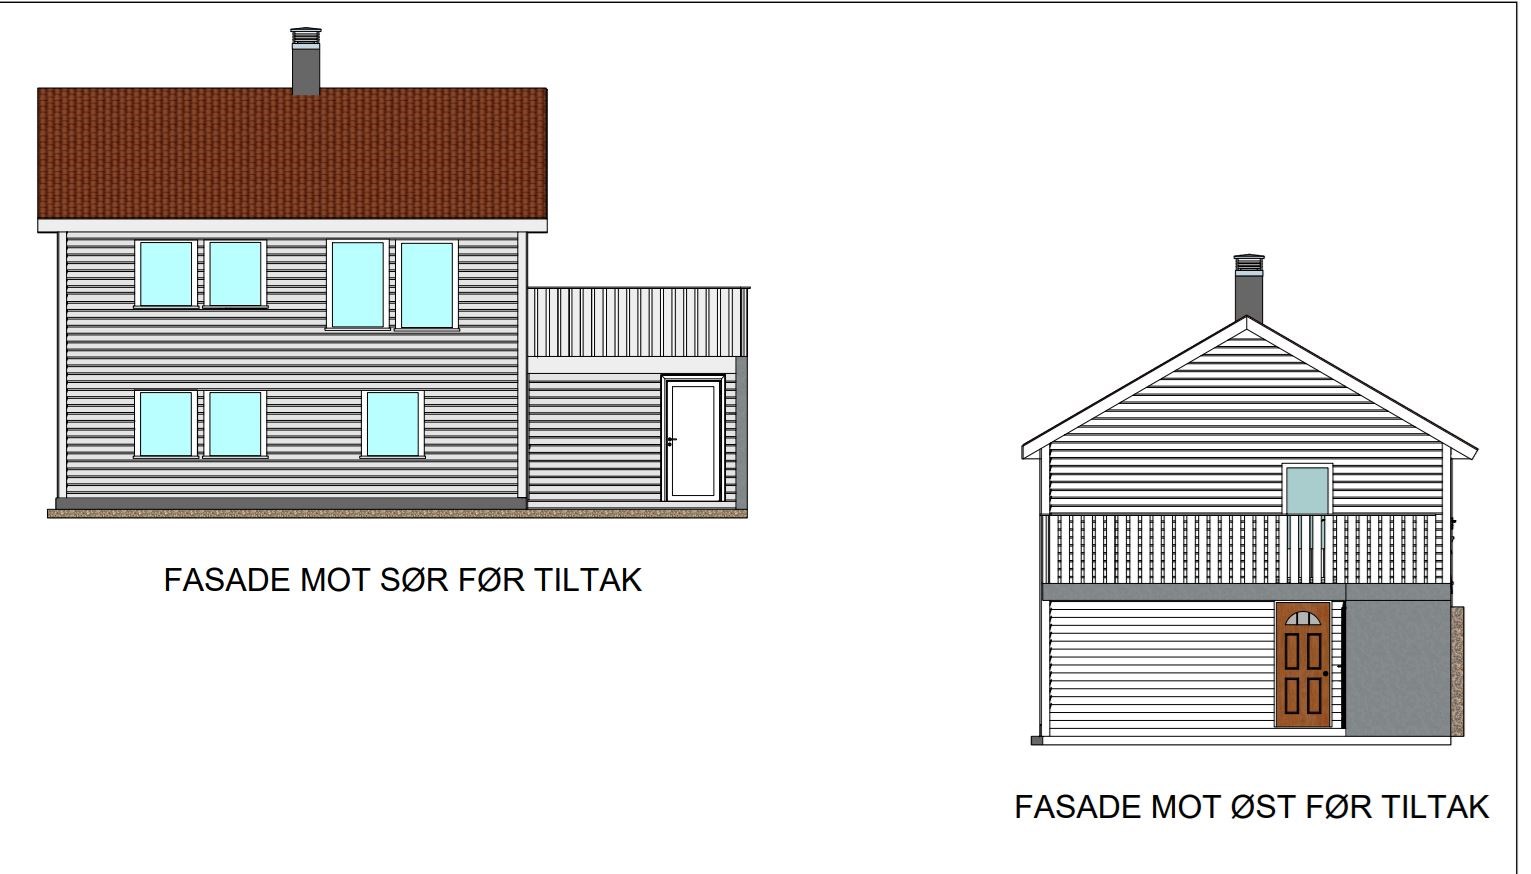 Tilbygg med terrasse over oppvarmet bygning - Tak og konstruksjon - trenger innspill - Dagens fasade.JPG - Papir